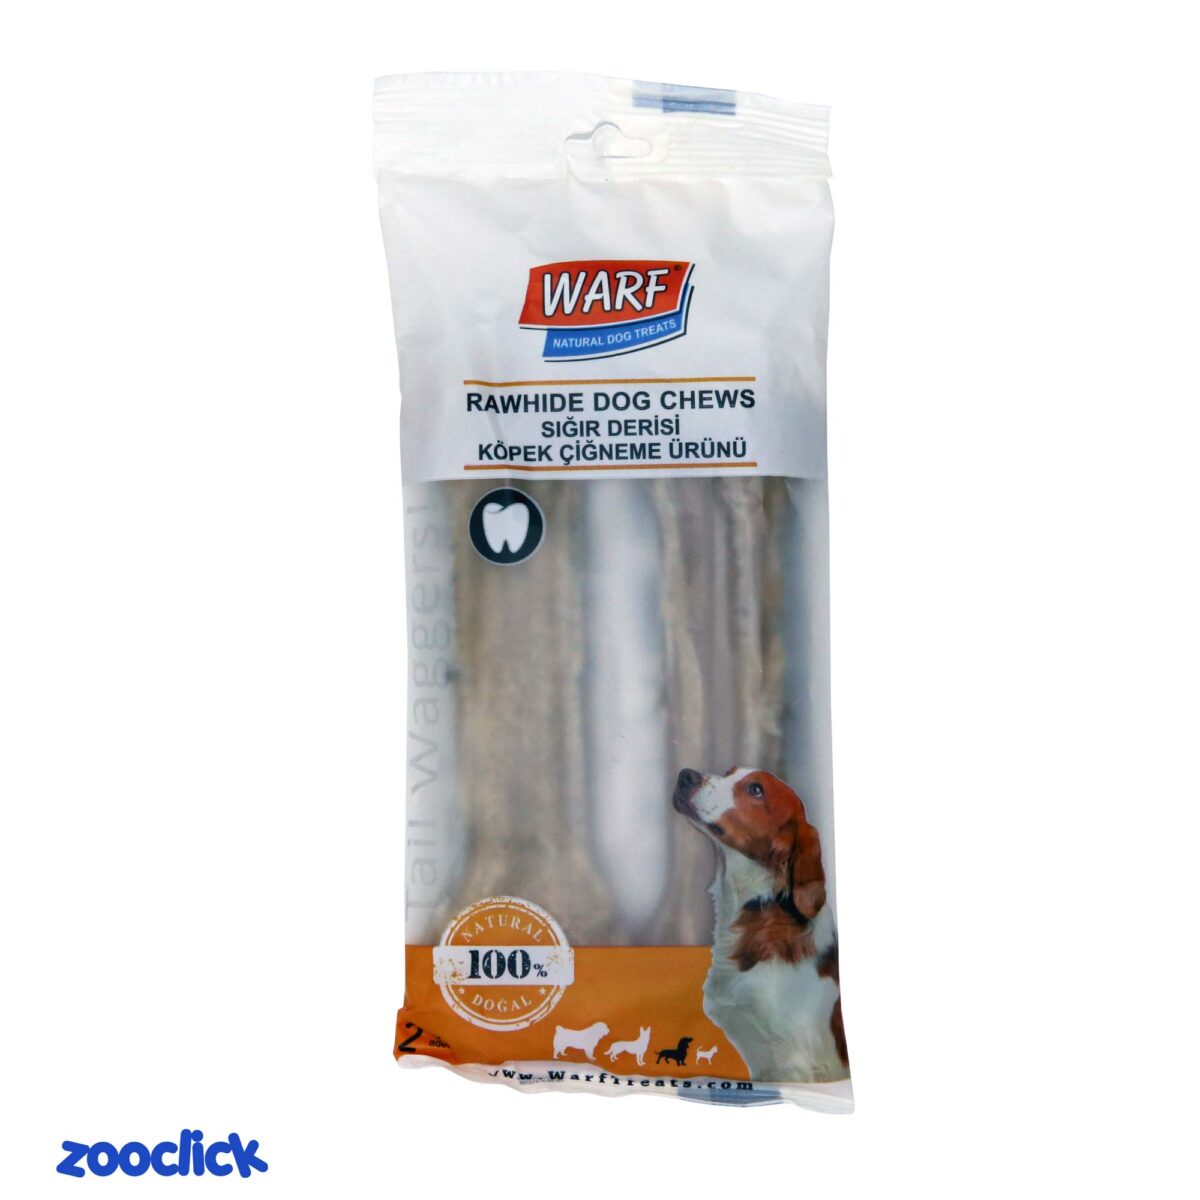 warf rawhide dog chews تشویقی استخوانی طبیعی سگ وارف